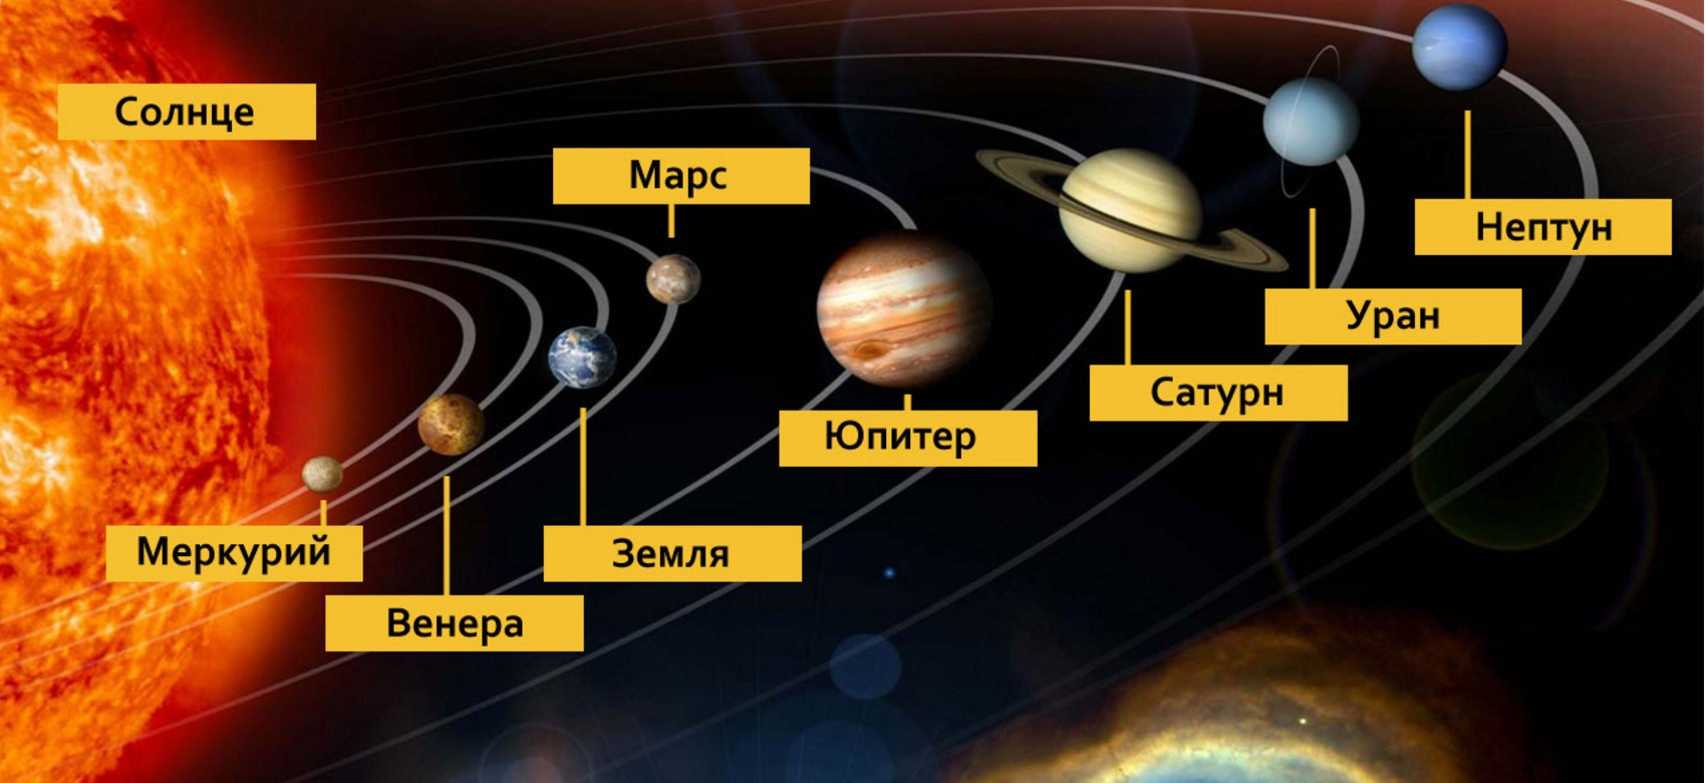 Юпитер планета, масса, список названий спутников, радиус колец, поверхность, сколько лететь до юпитера, интересные факты, температура, плотность, площадь | tvercult.ru